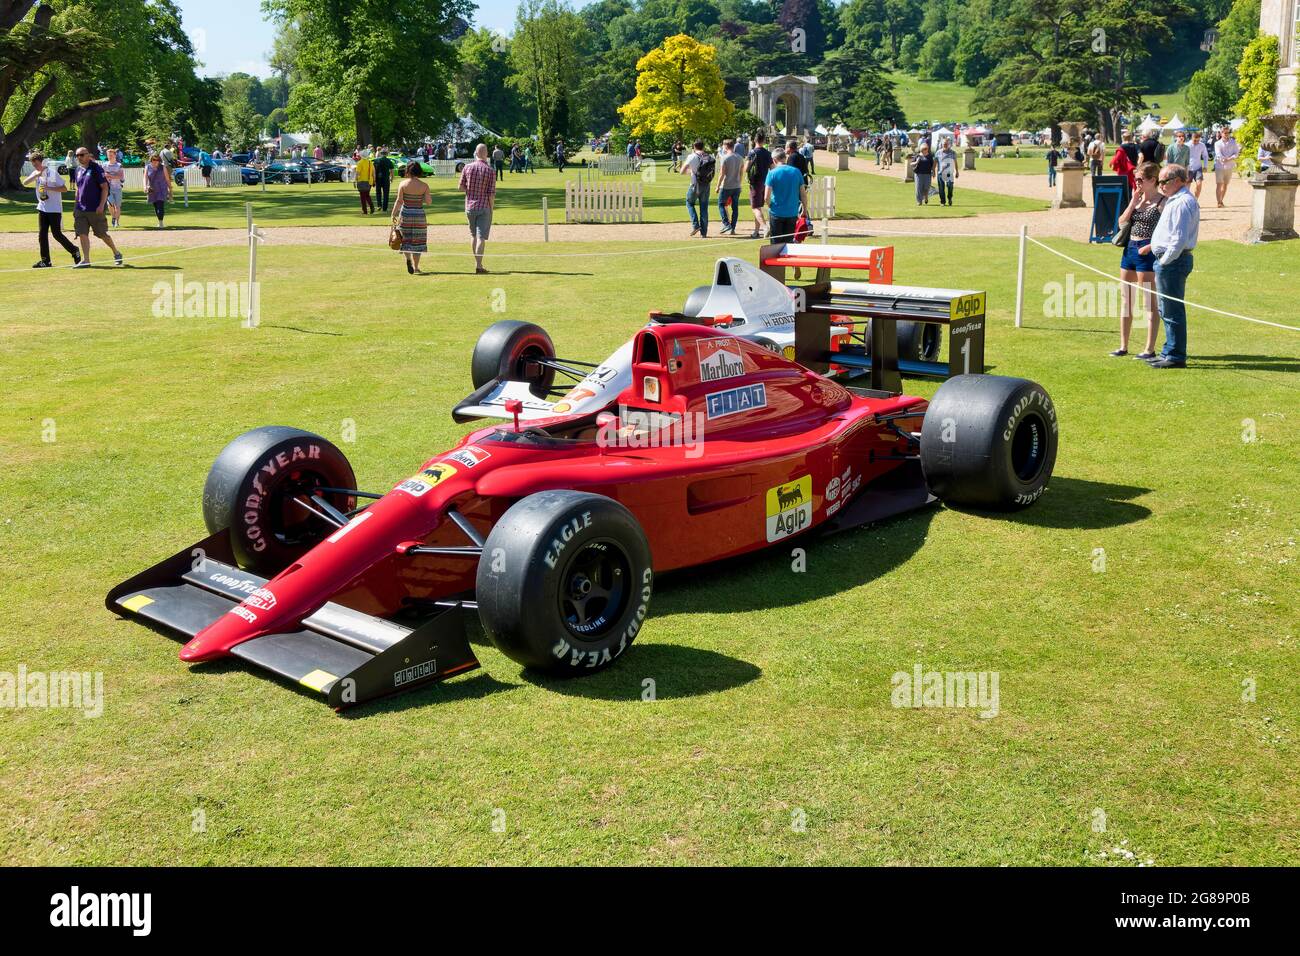 Wilton, Wiltshire, Großbritannien - 7 2015. Juni: Zwei Formel-1-Rennwagen, die an dem Absturz des Großen Preises von Japan 1990 beteiligt waren, angetrieben von Ayrton Senna & Alain Prost Stockfoto